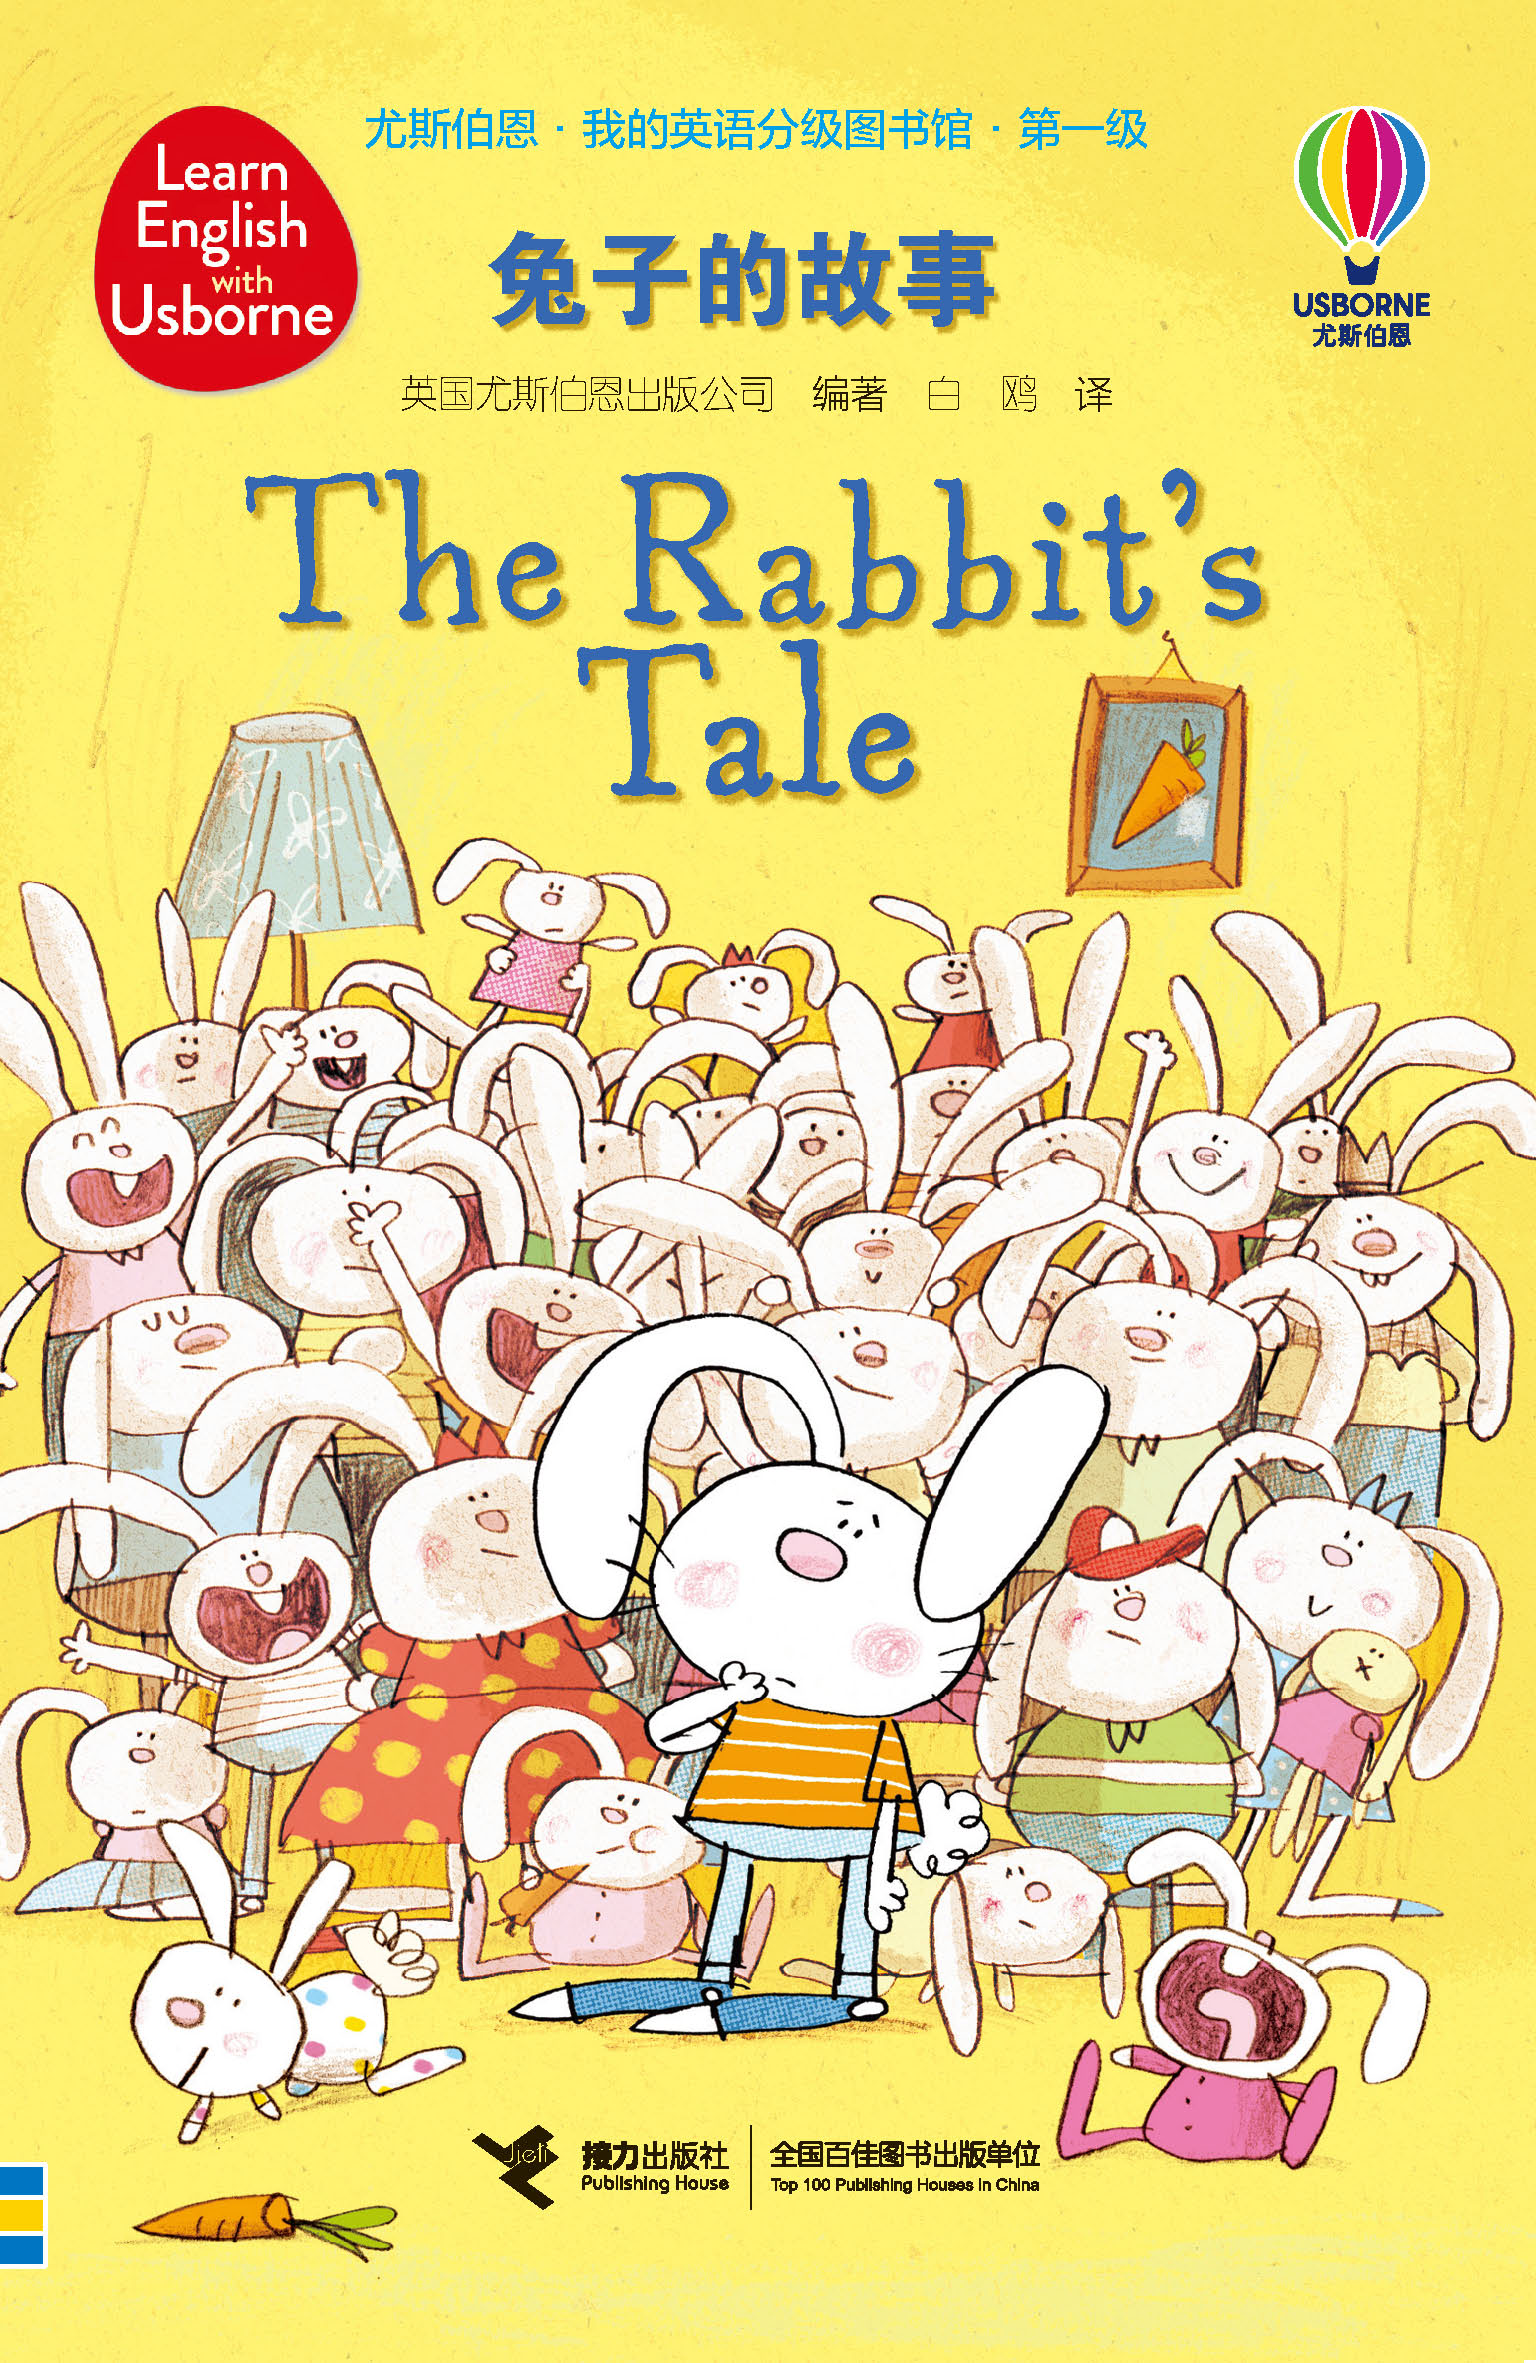 尤斯伯恩·我的英语分级图书馆·第一级·兔子的故事